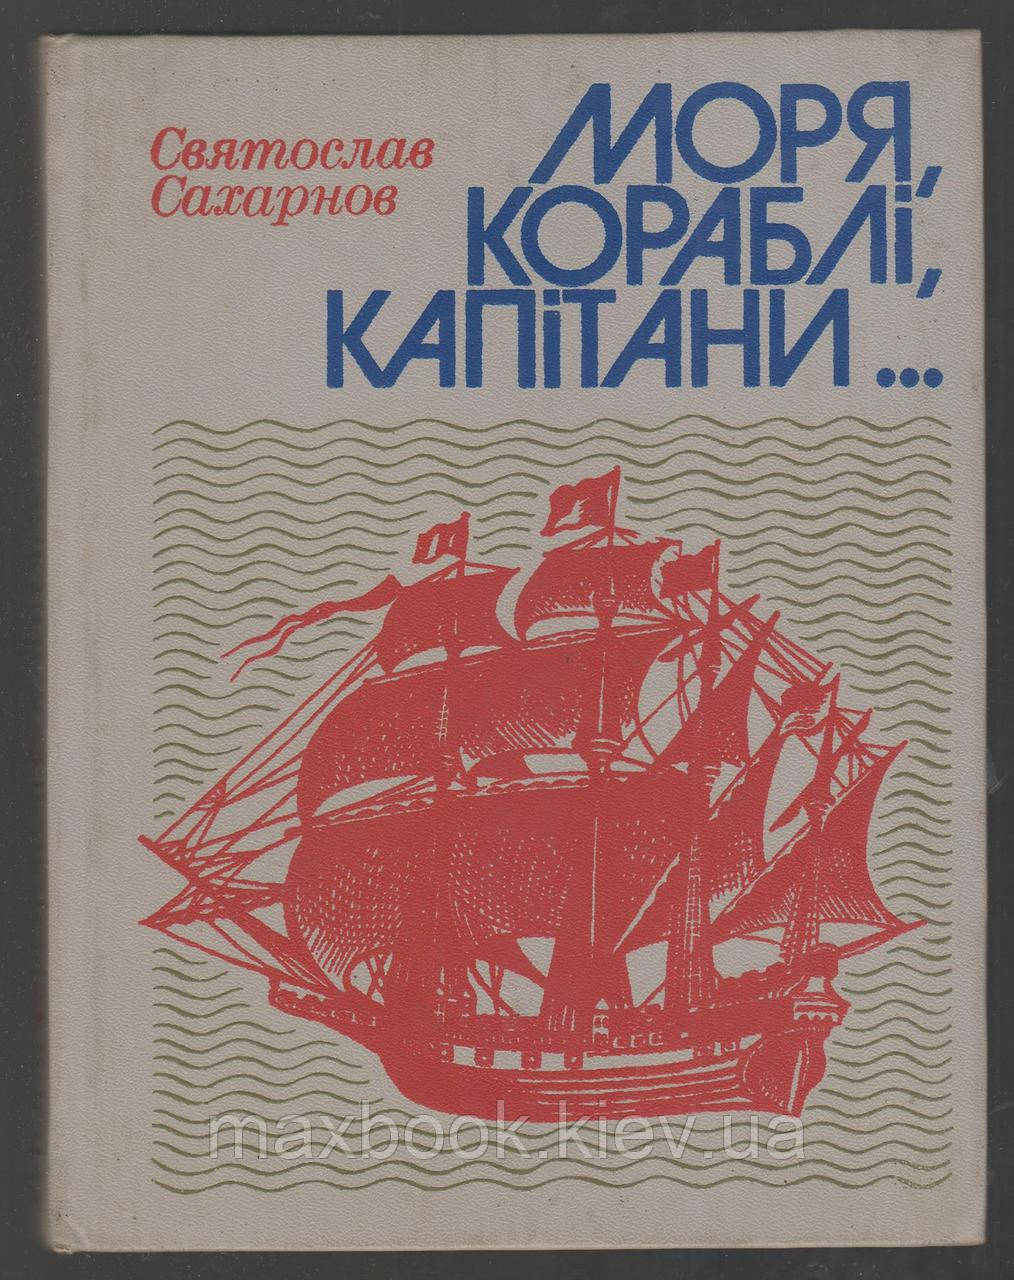 Сахарнов Святослав. Моря, кораблі, капітани. Книга майбутнього моряка.